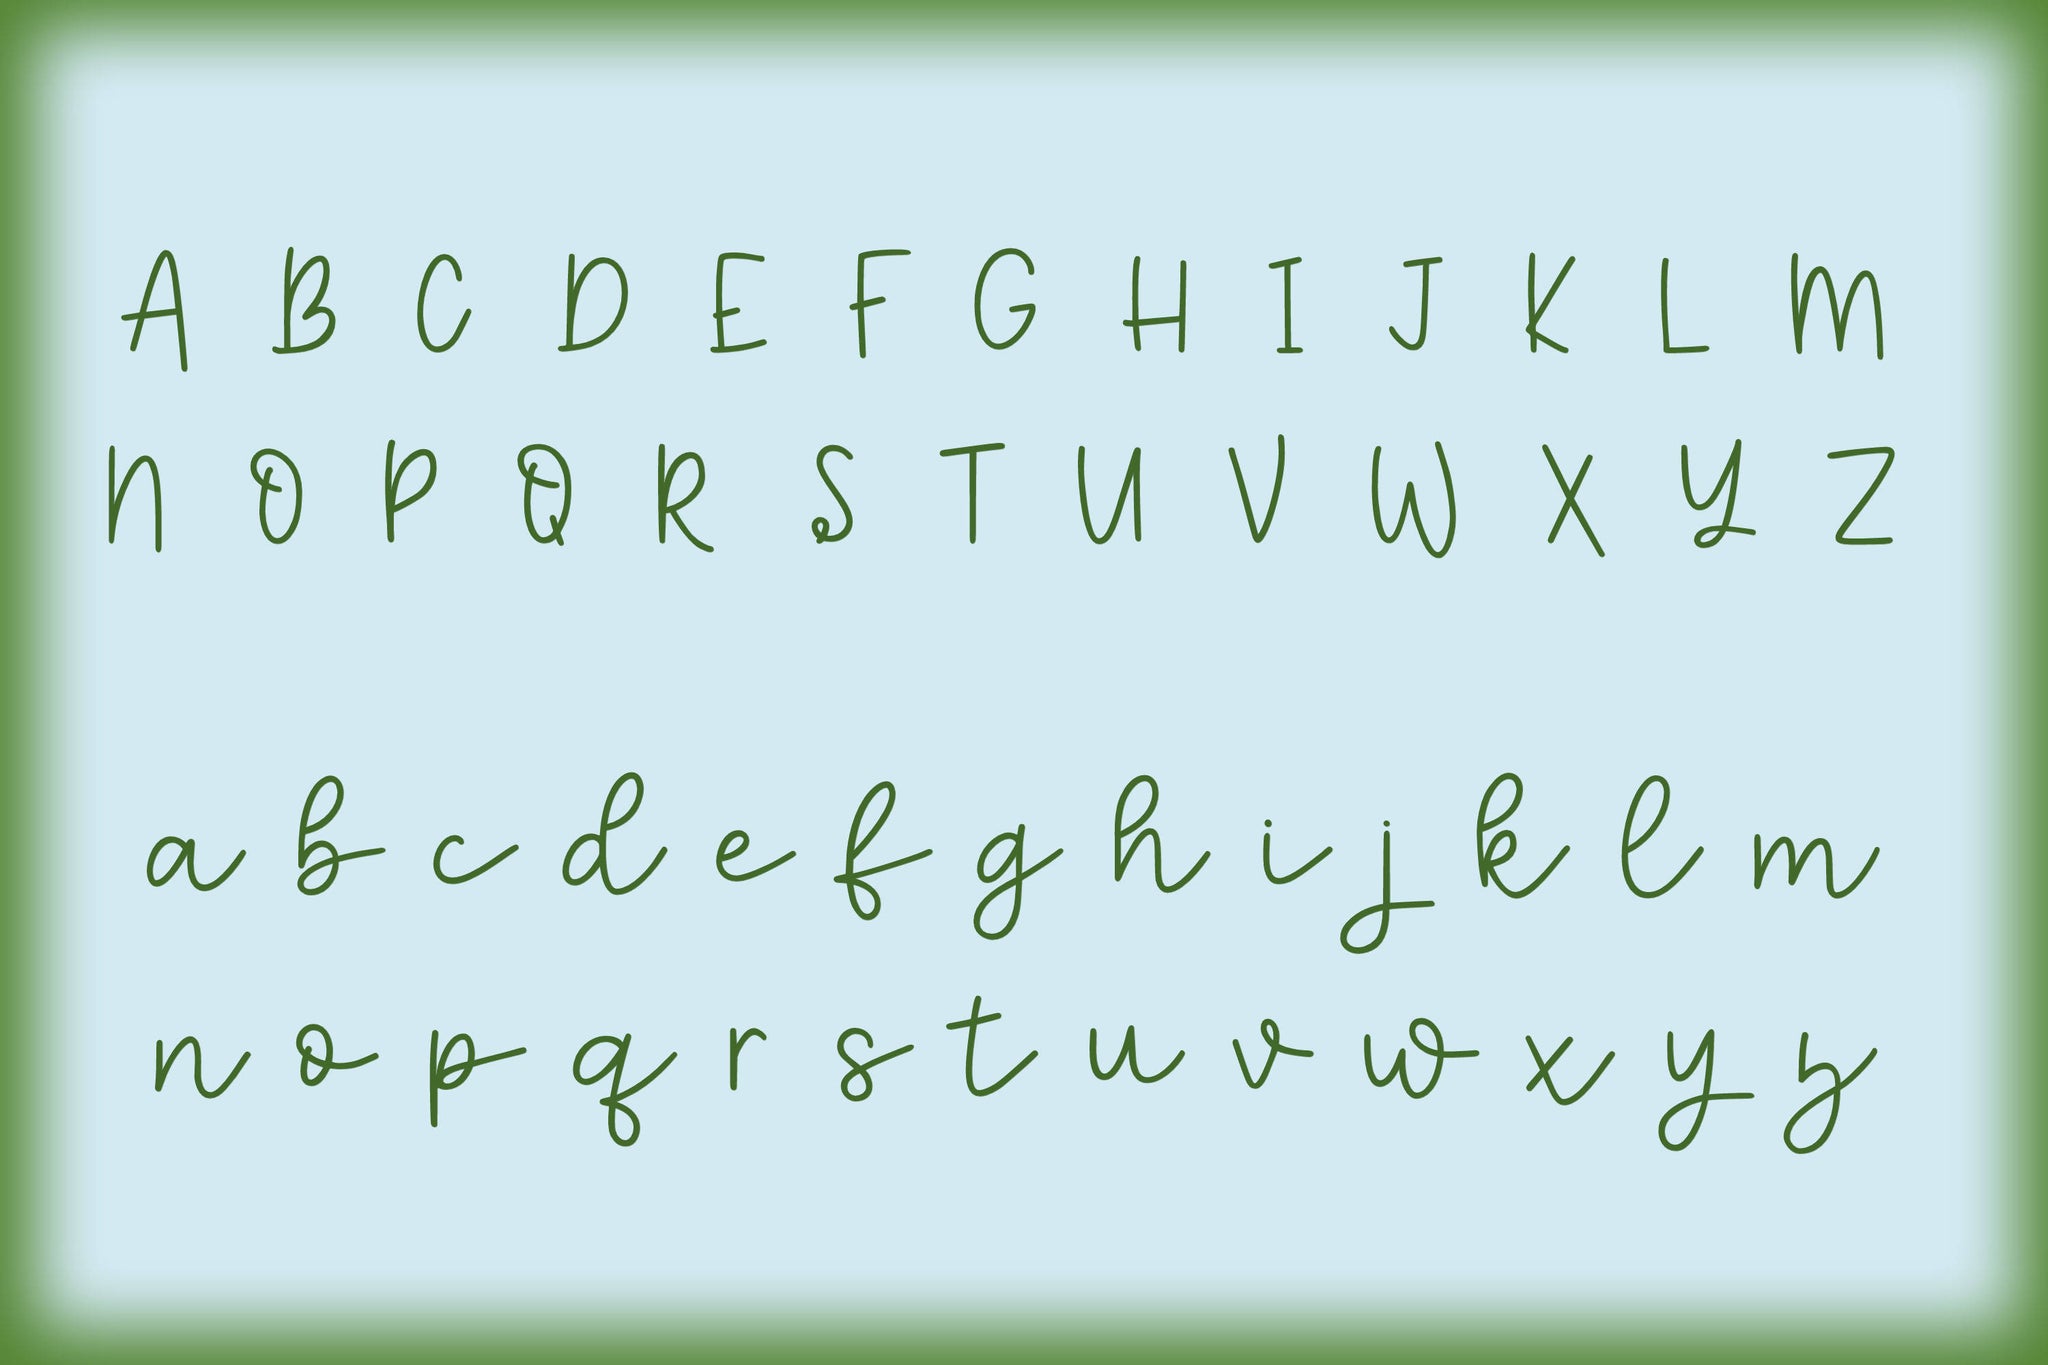 the handlettered font kit